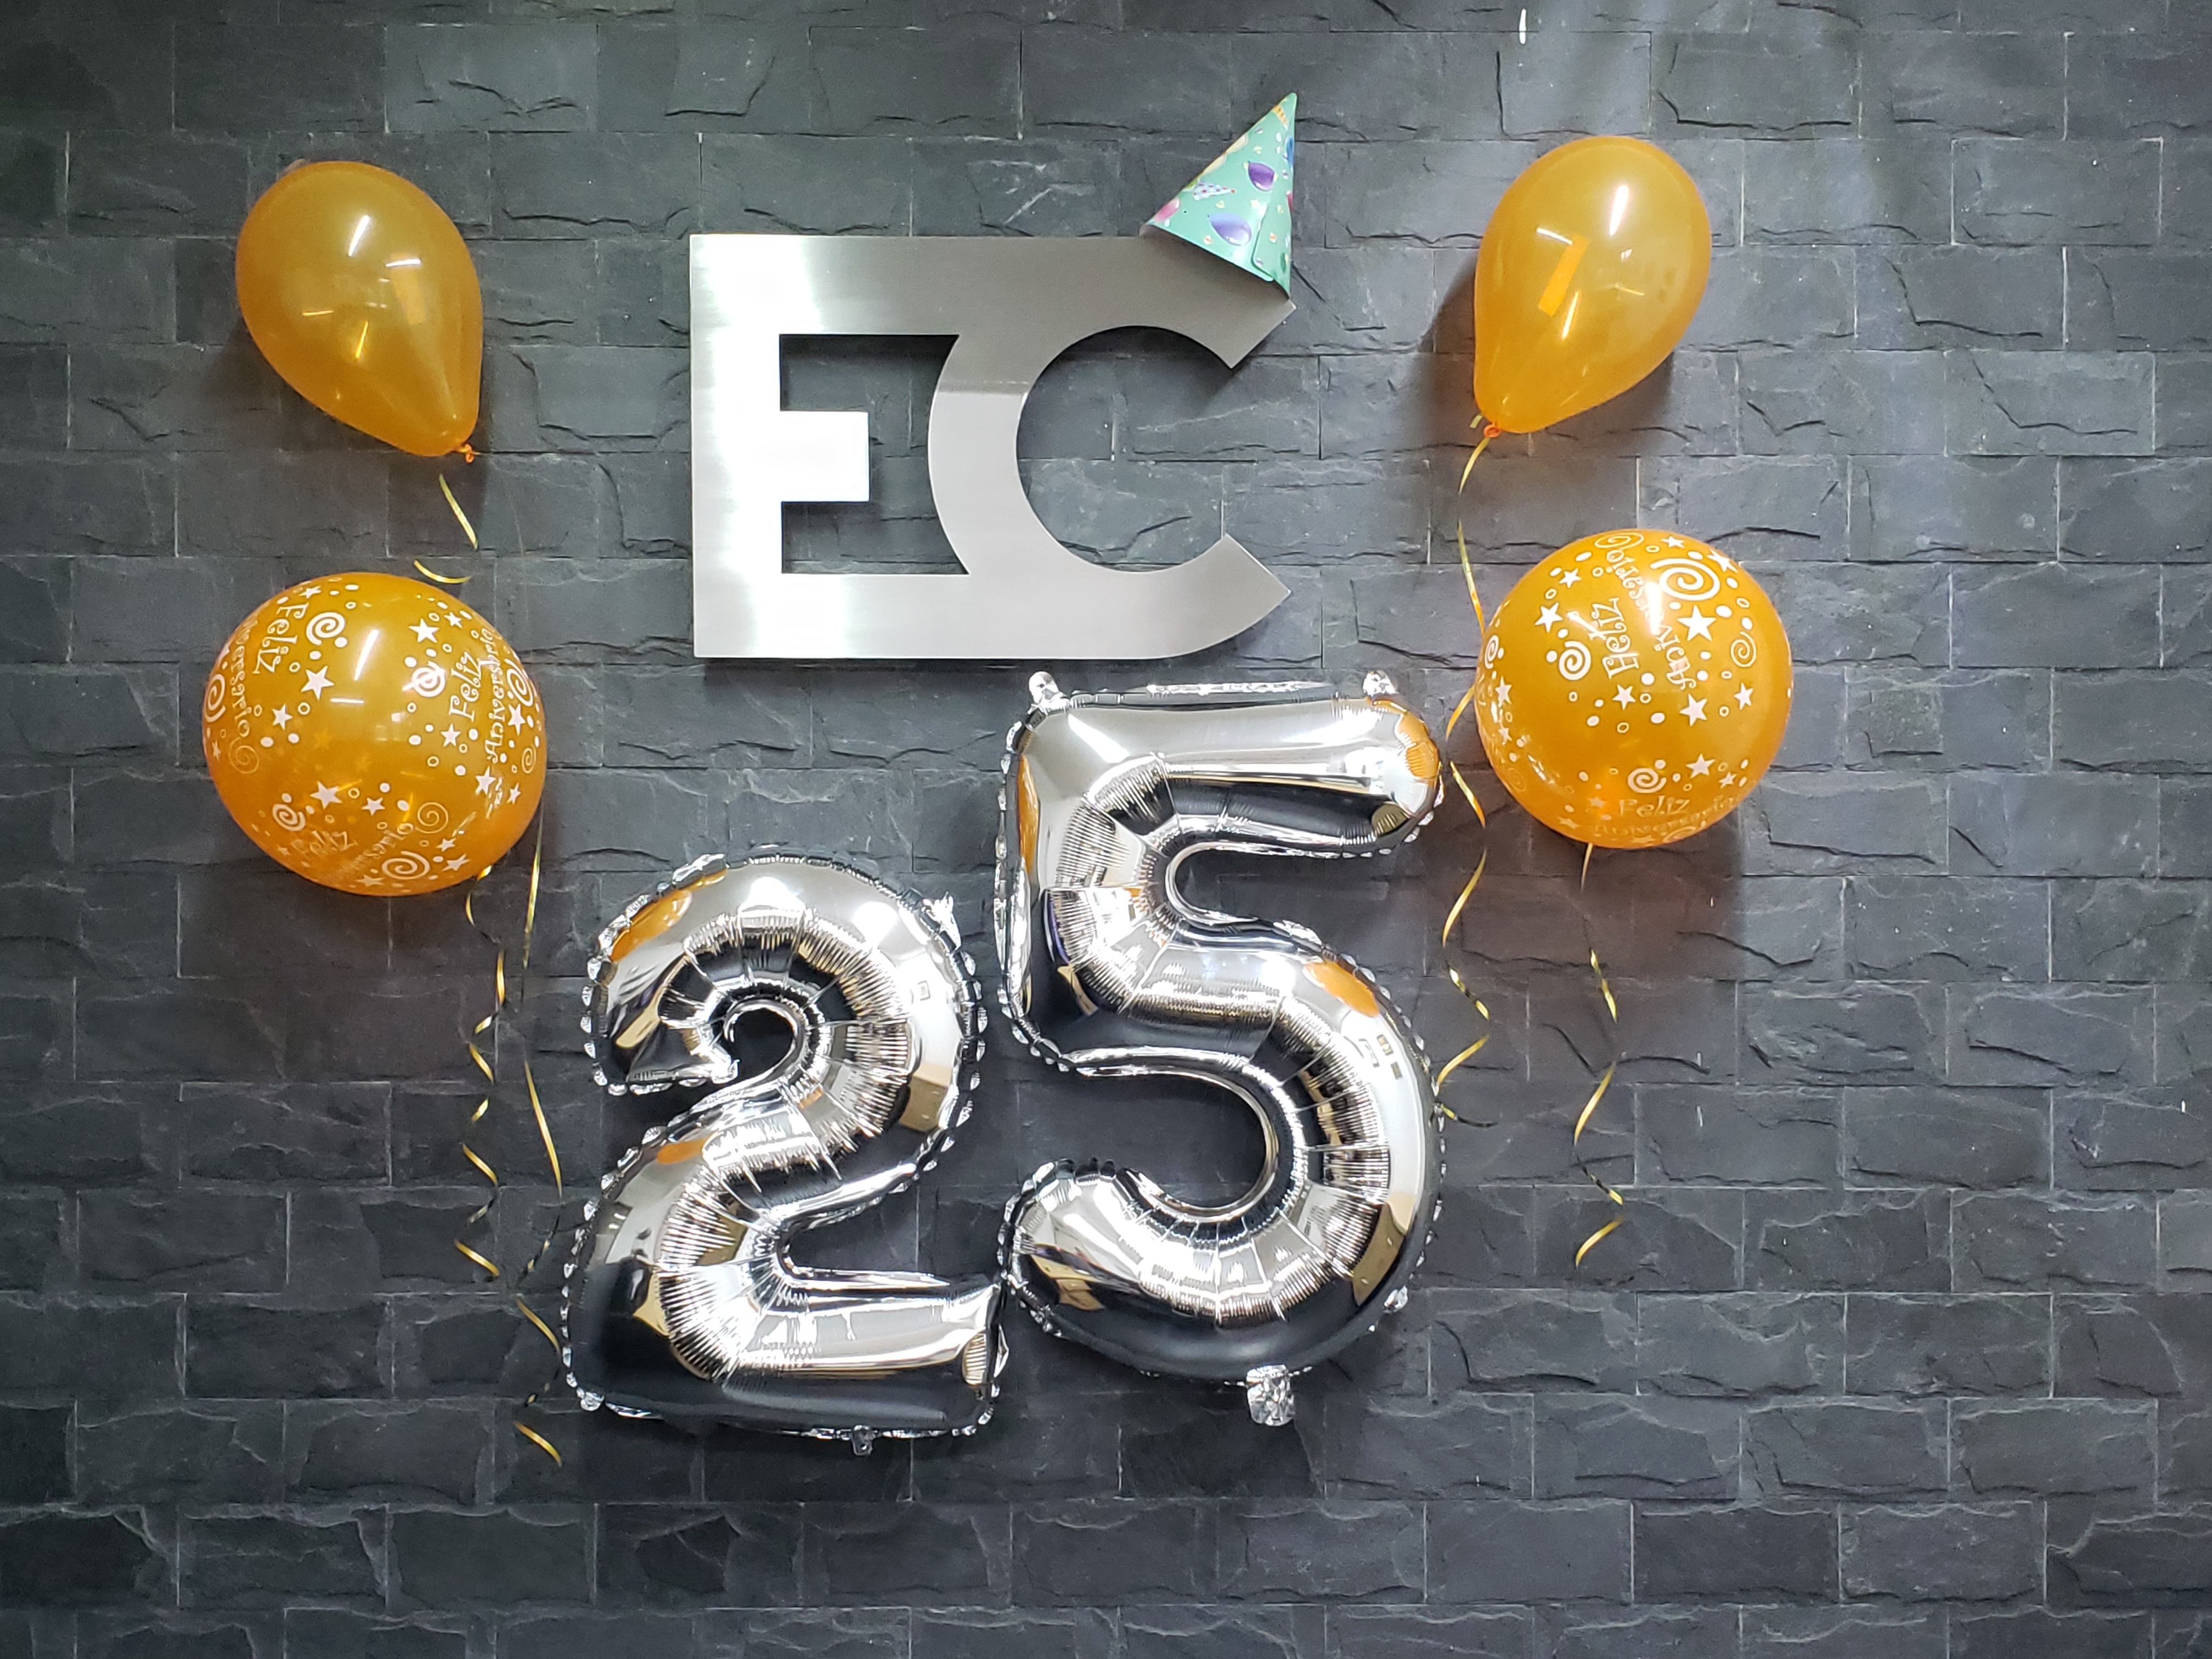 25 Años EC